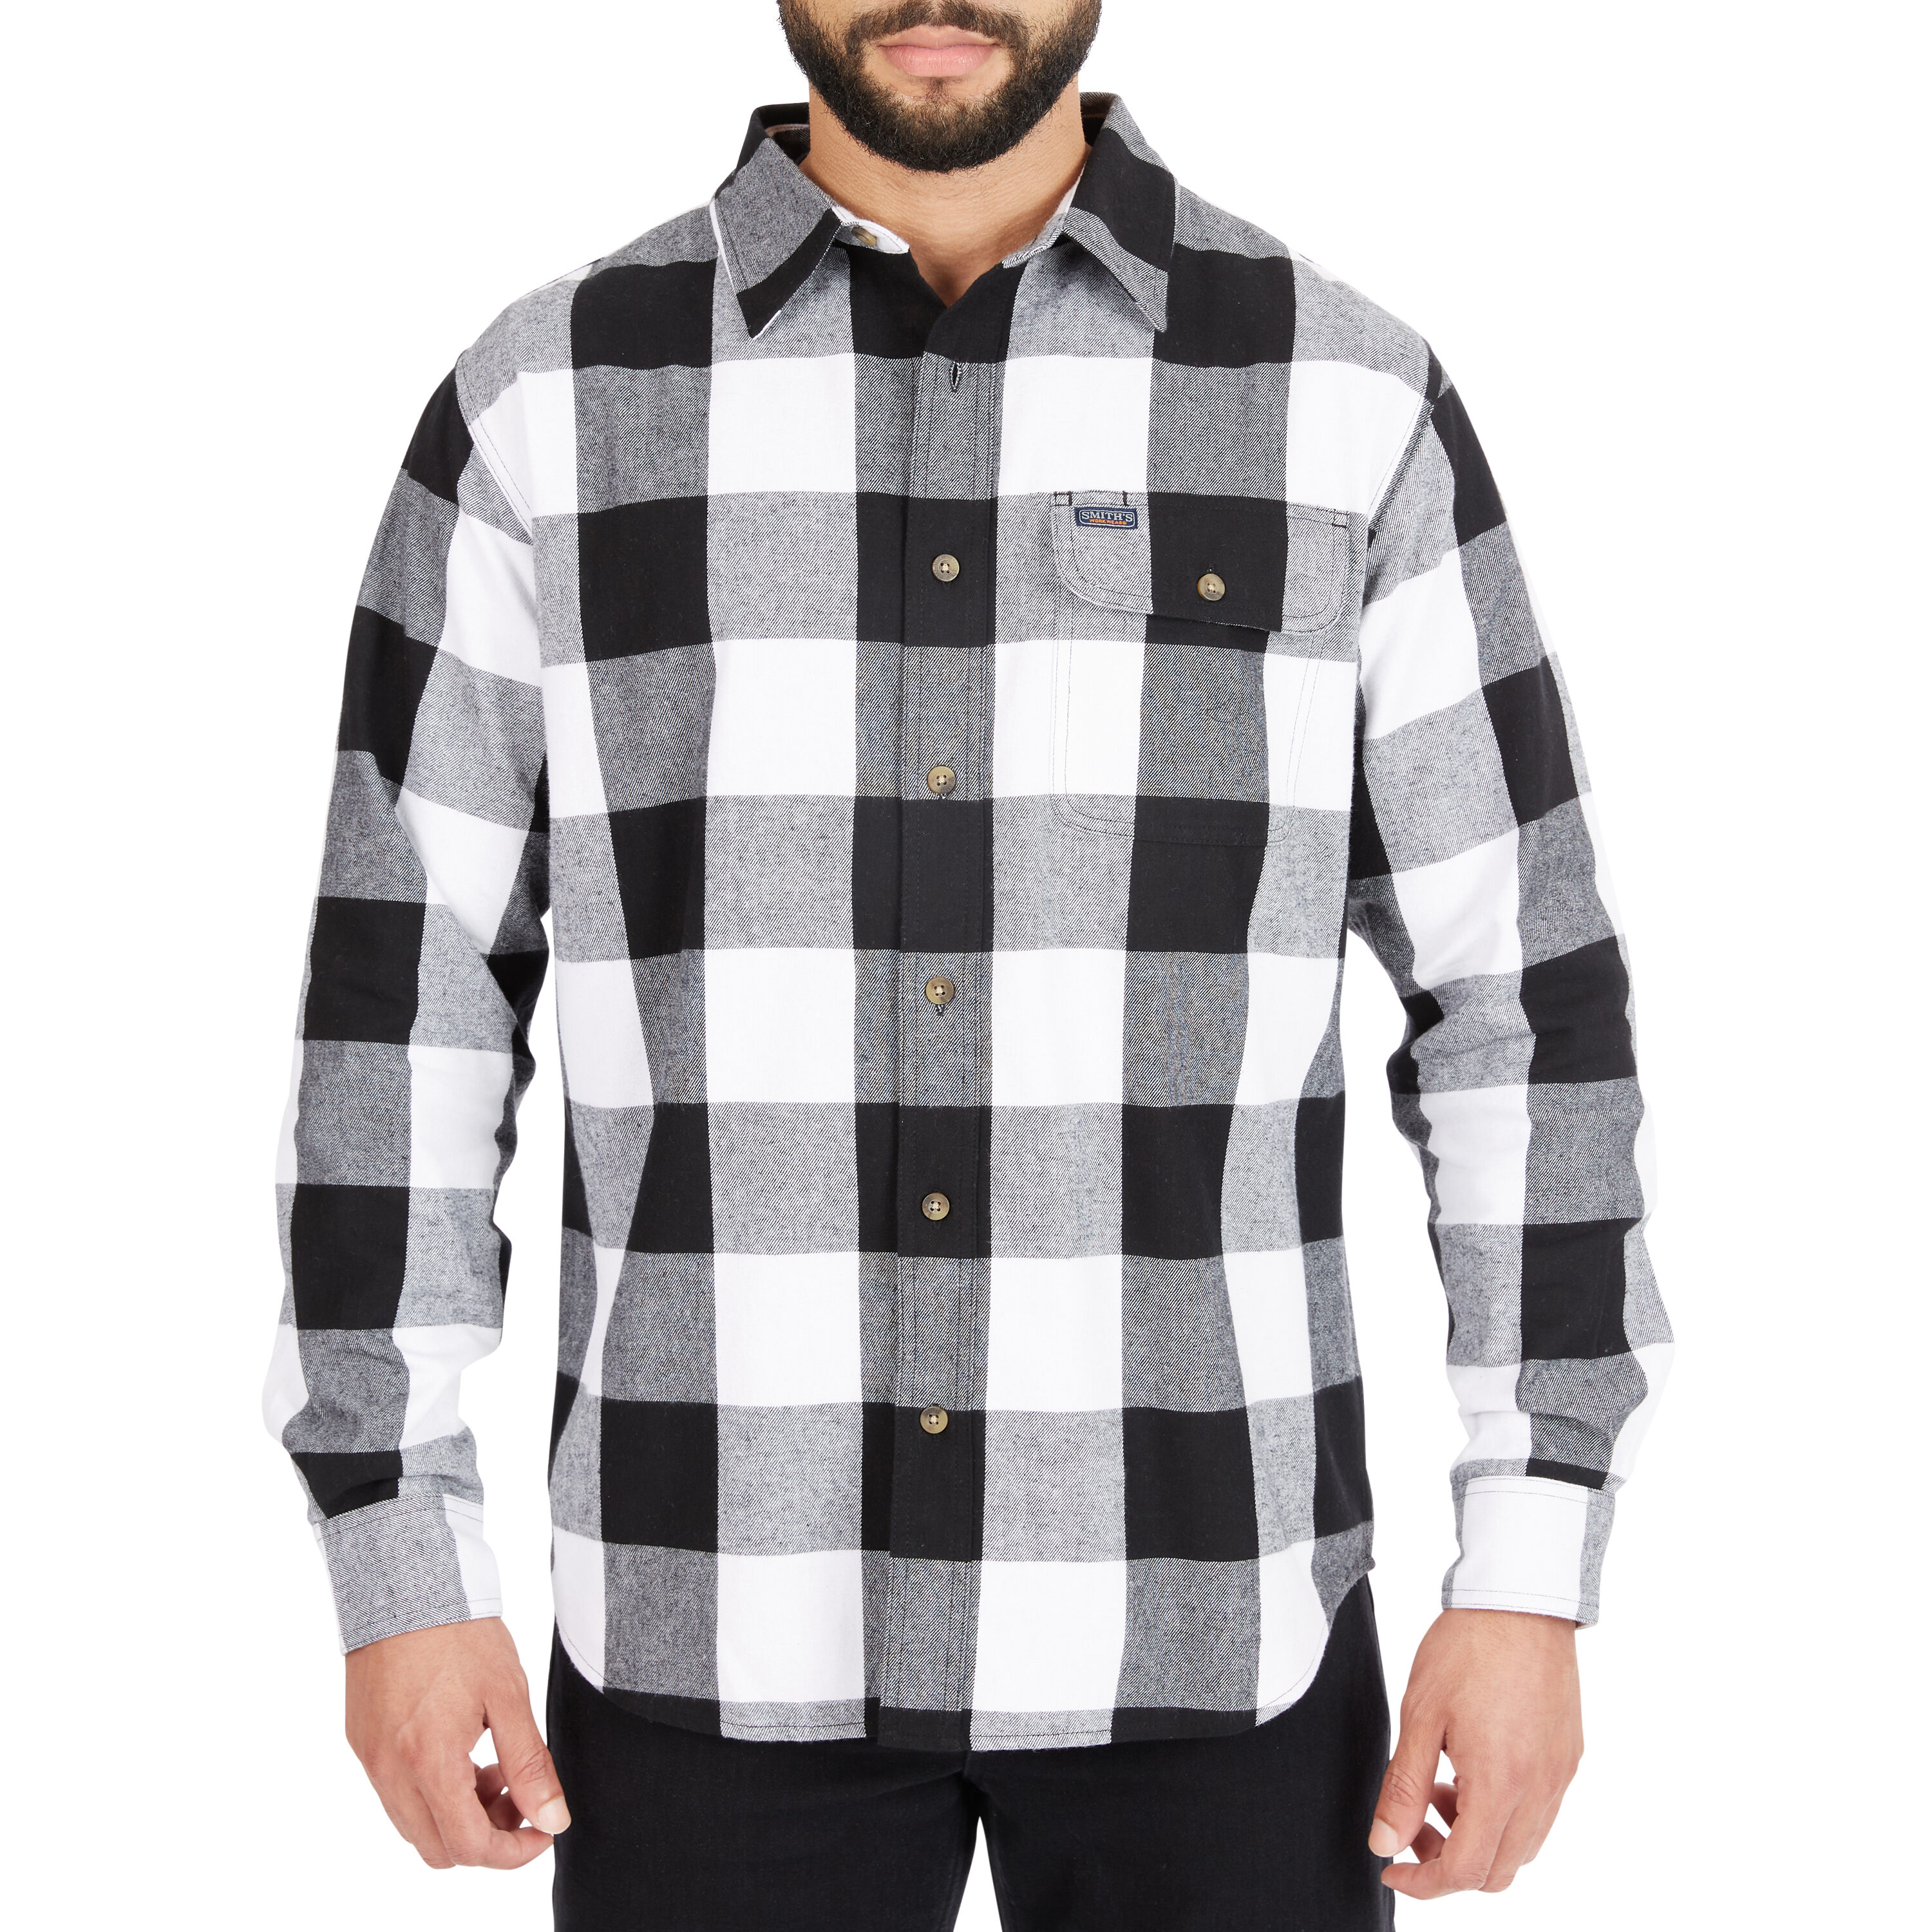 Men's Flannel Shirt in Black & White Buffalo Check - Thursday